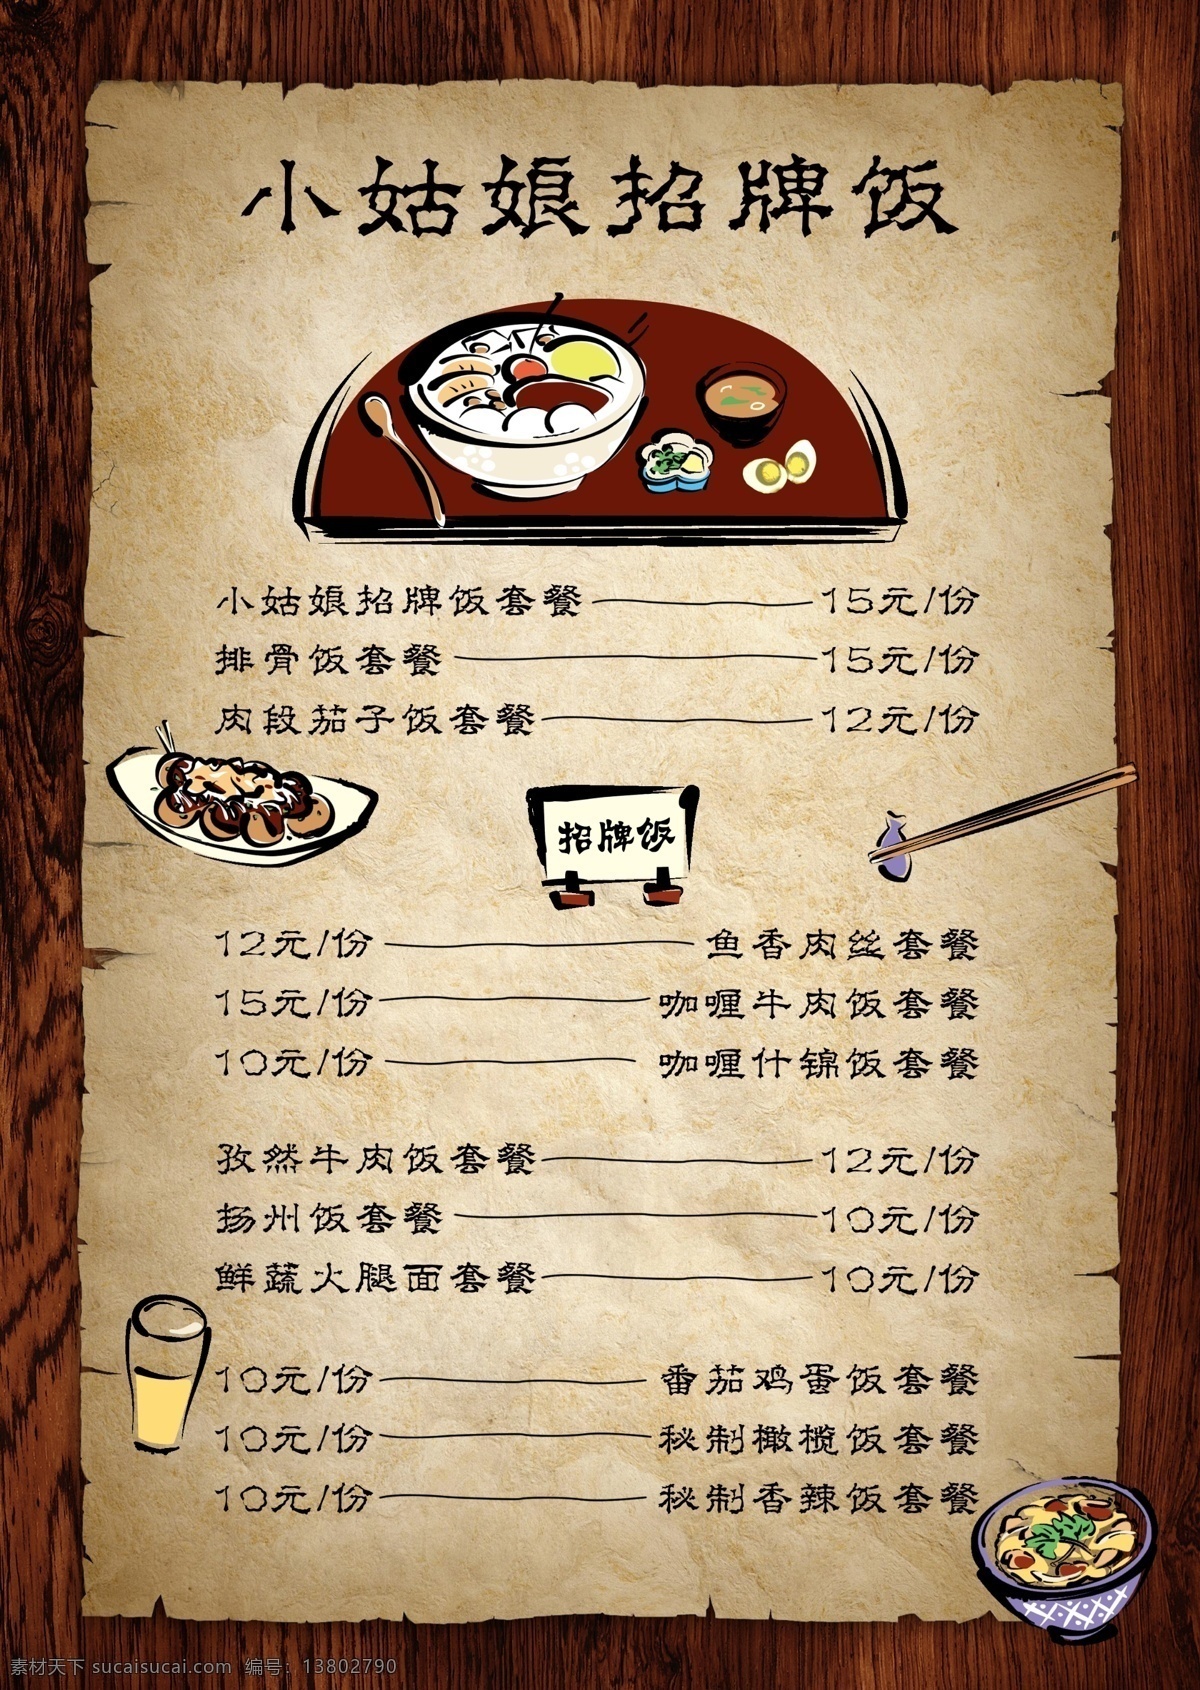 古典菜单 菜单 字体 边框 筷子 碗 勺子 分层 菜单菜谱